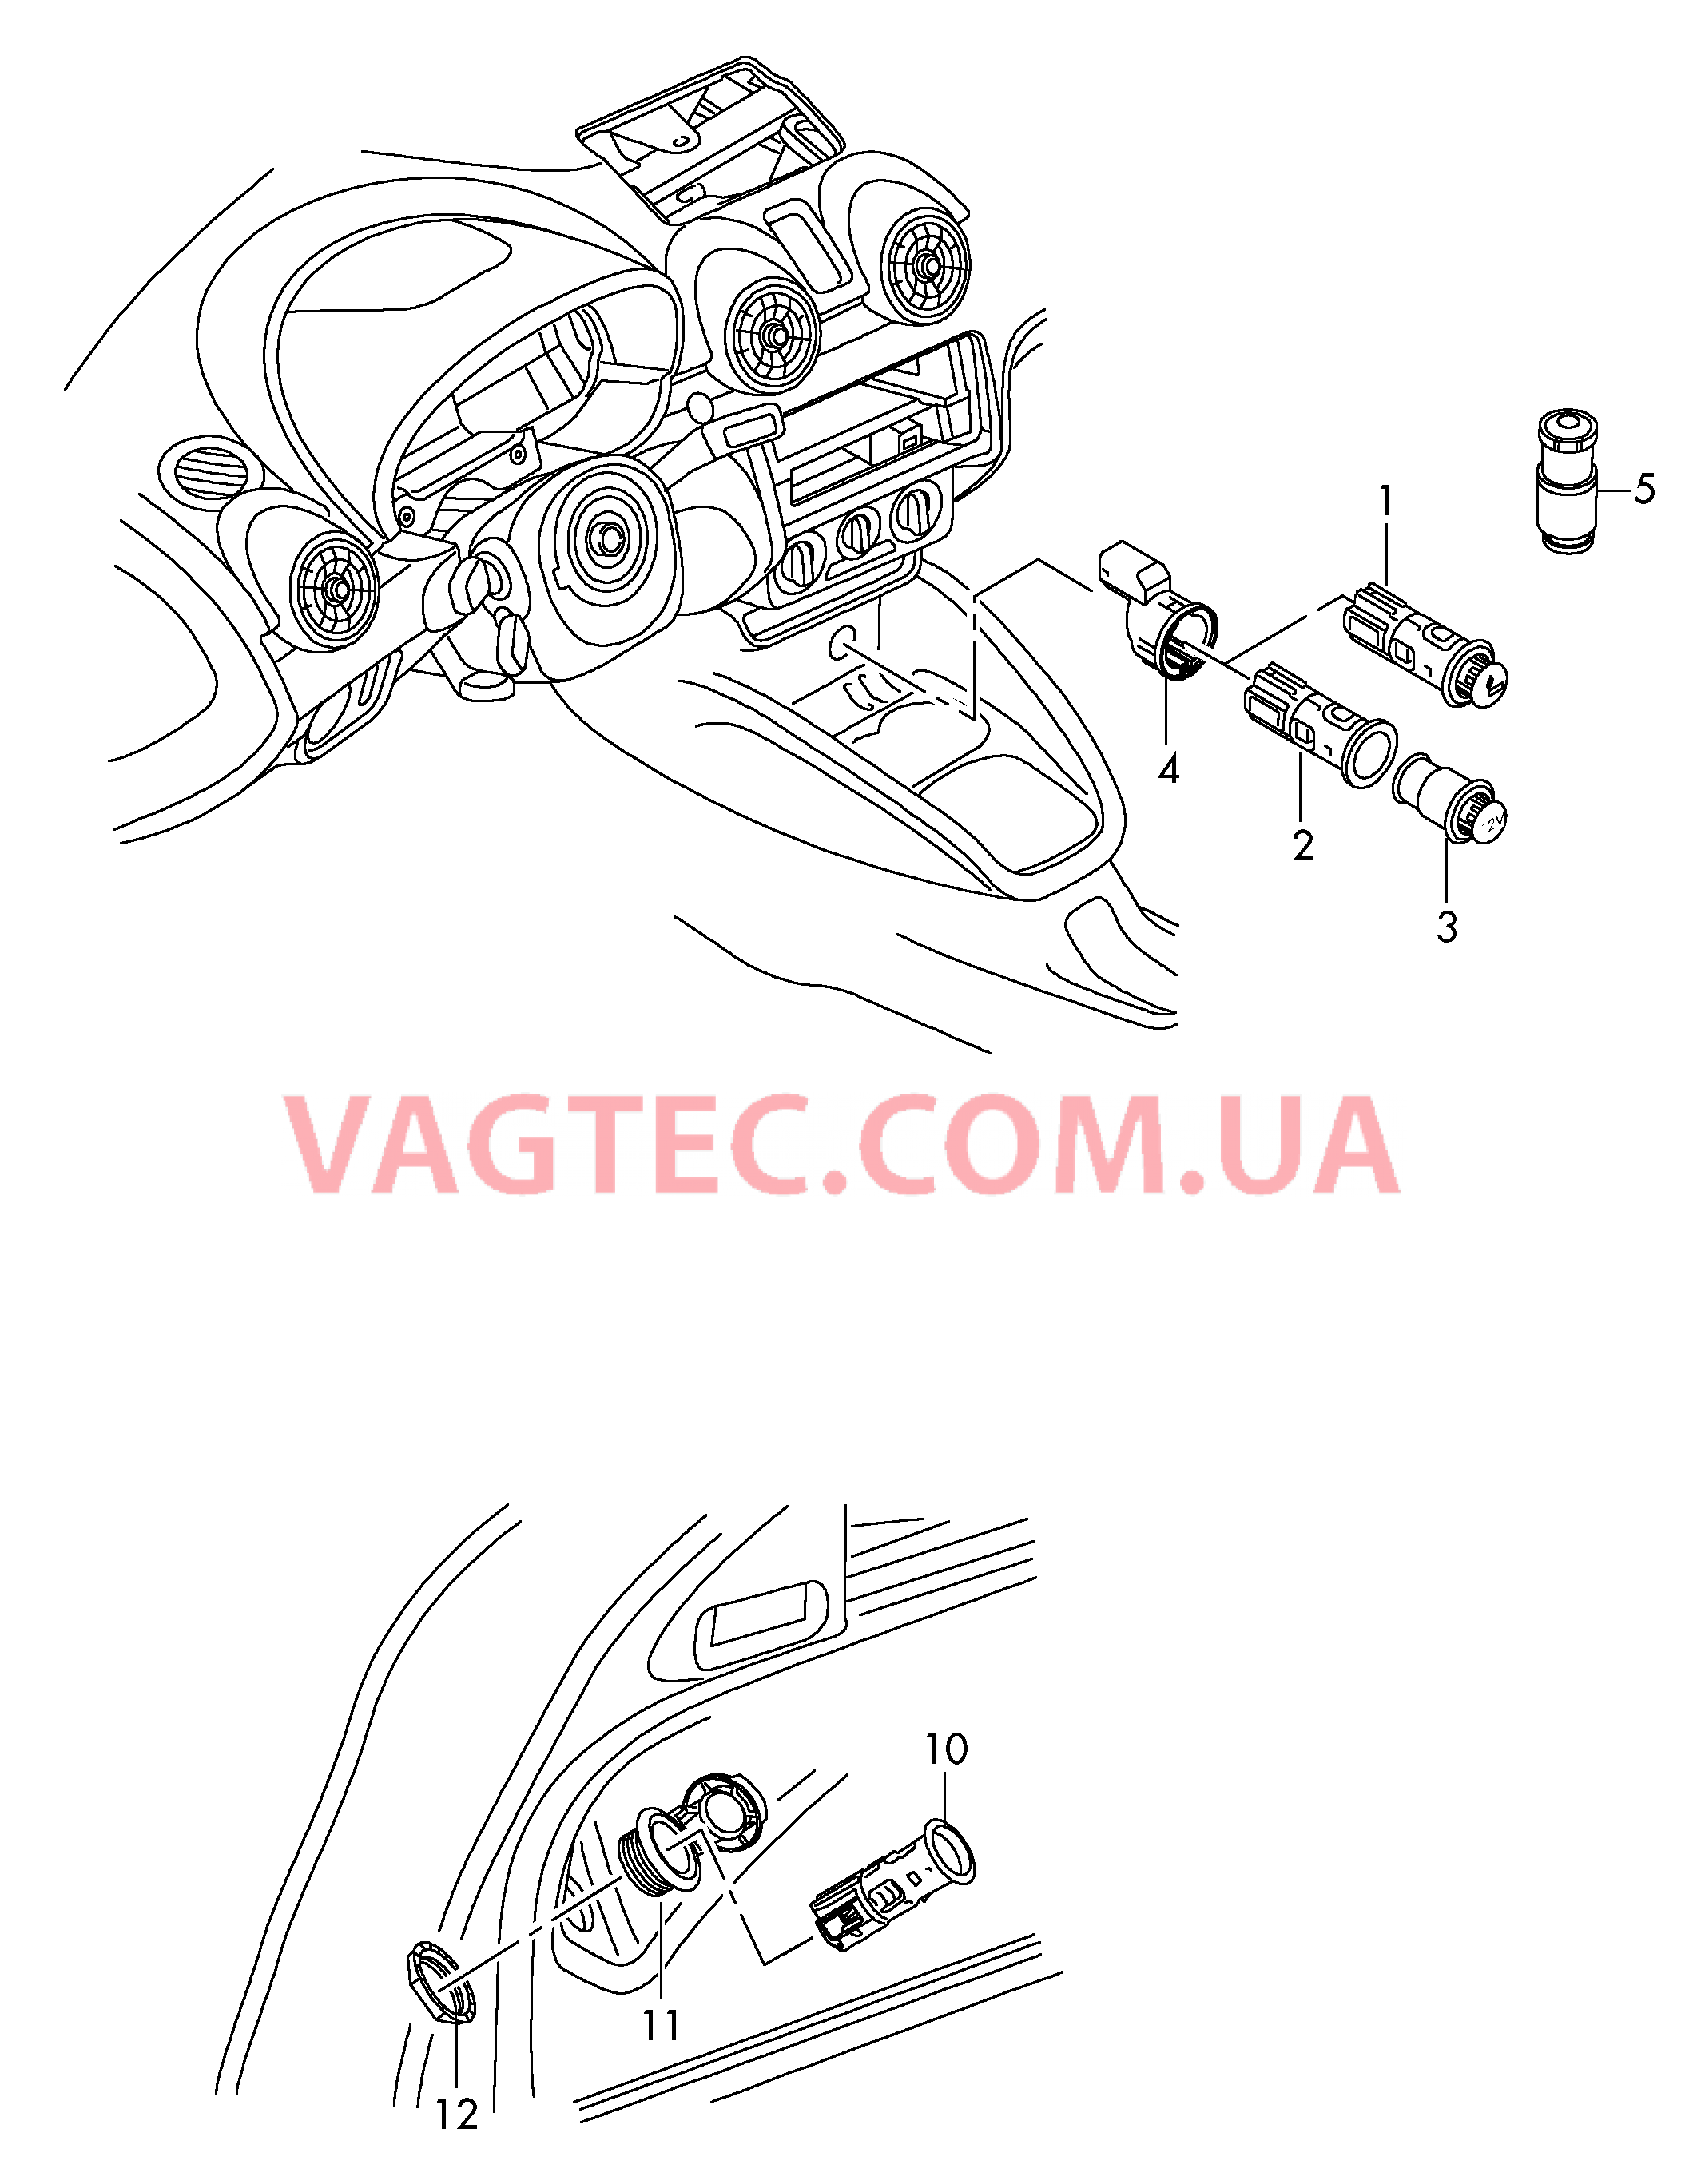 Прикуриватель Штепсельный разъем Карманный фонарь  для AUDI A1 2017